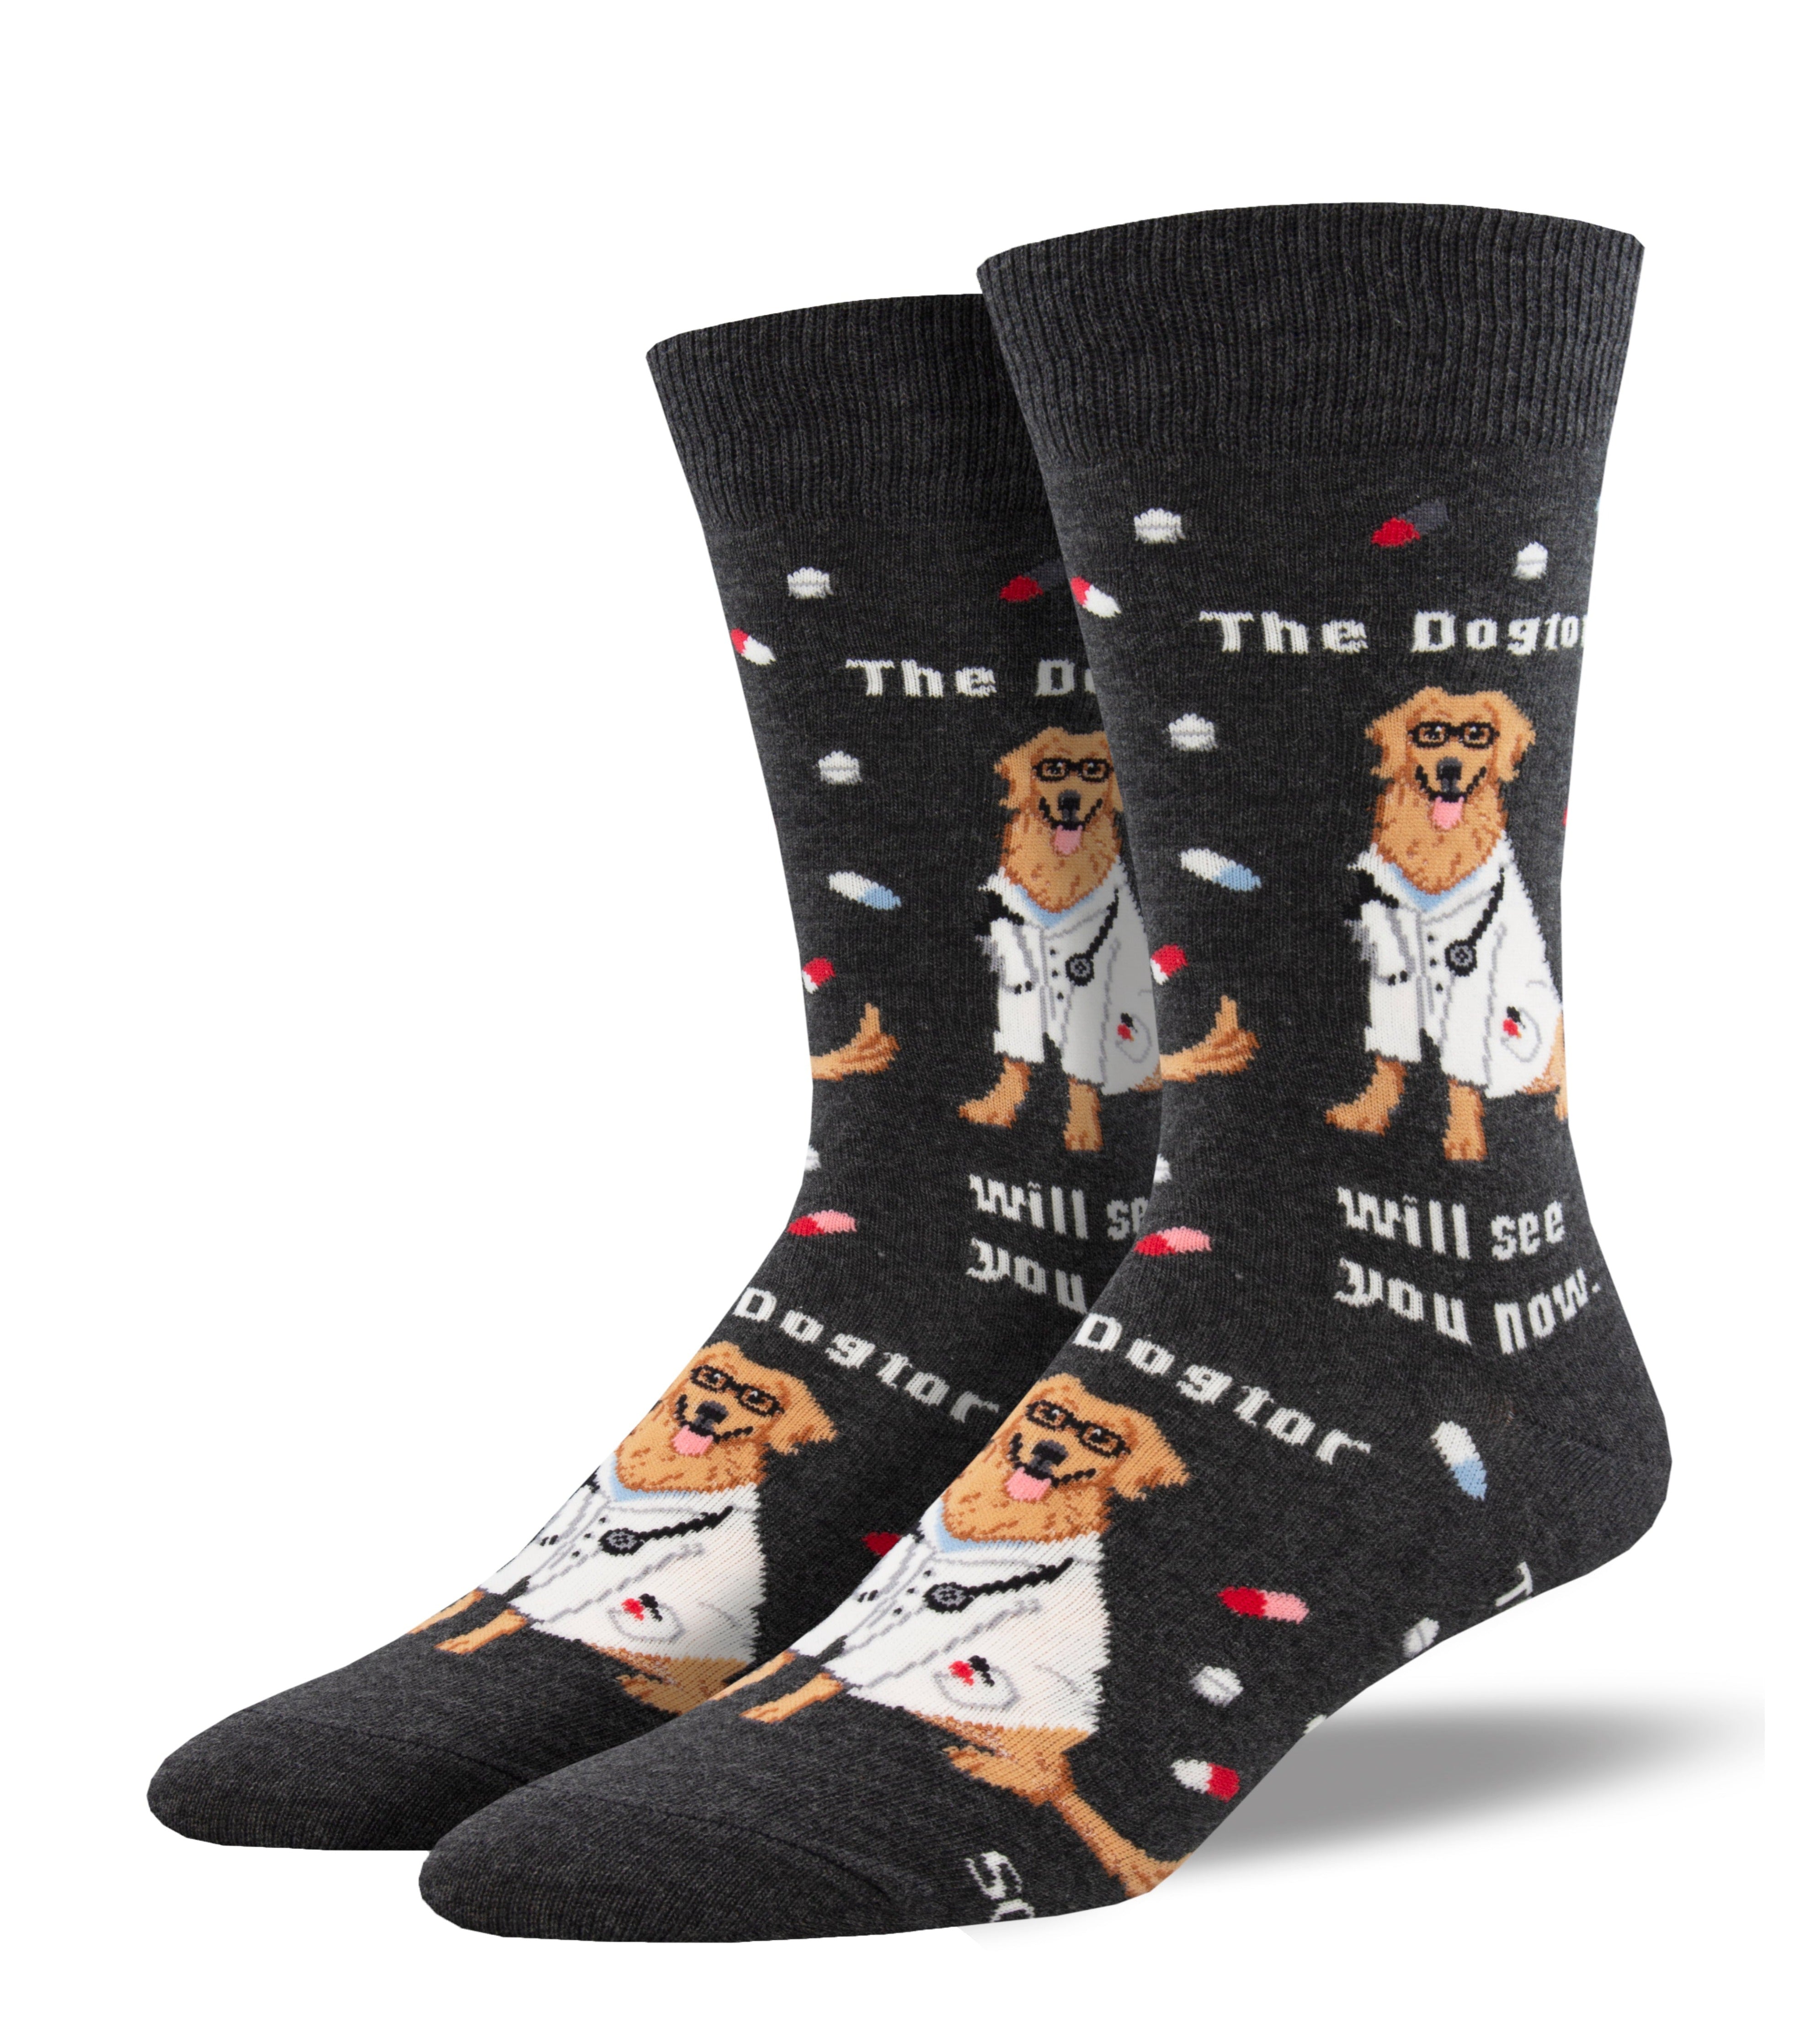 Men's "The Dogtor Is In" Socks